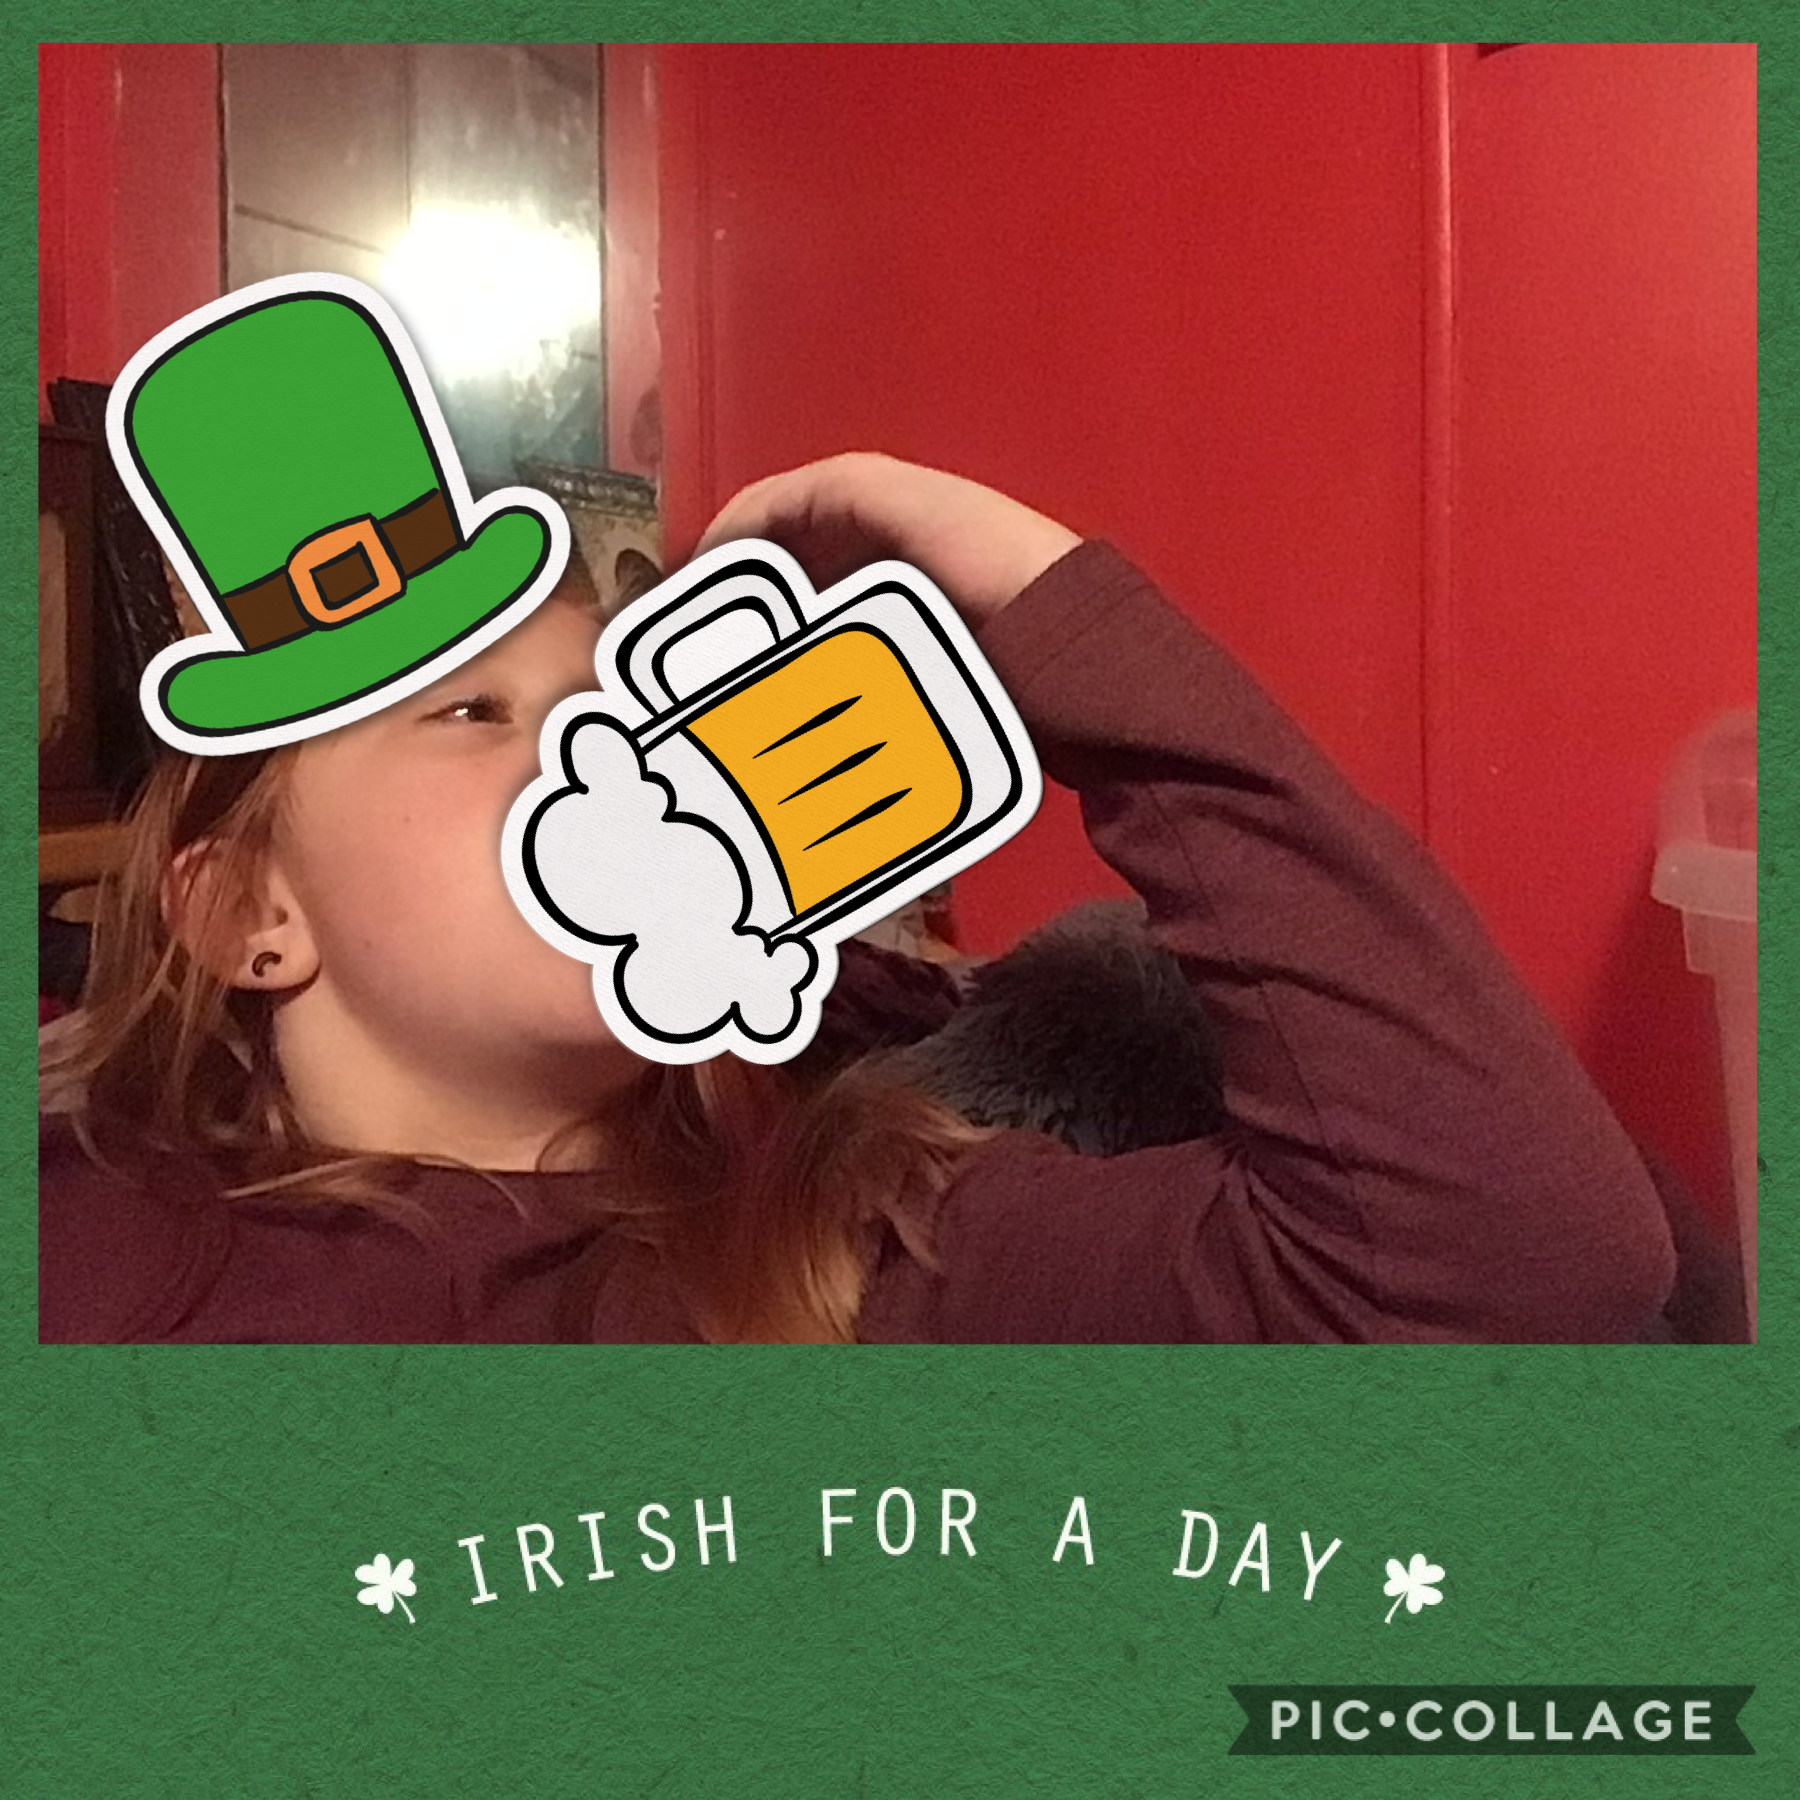  Happy St. Patrick’s Day